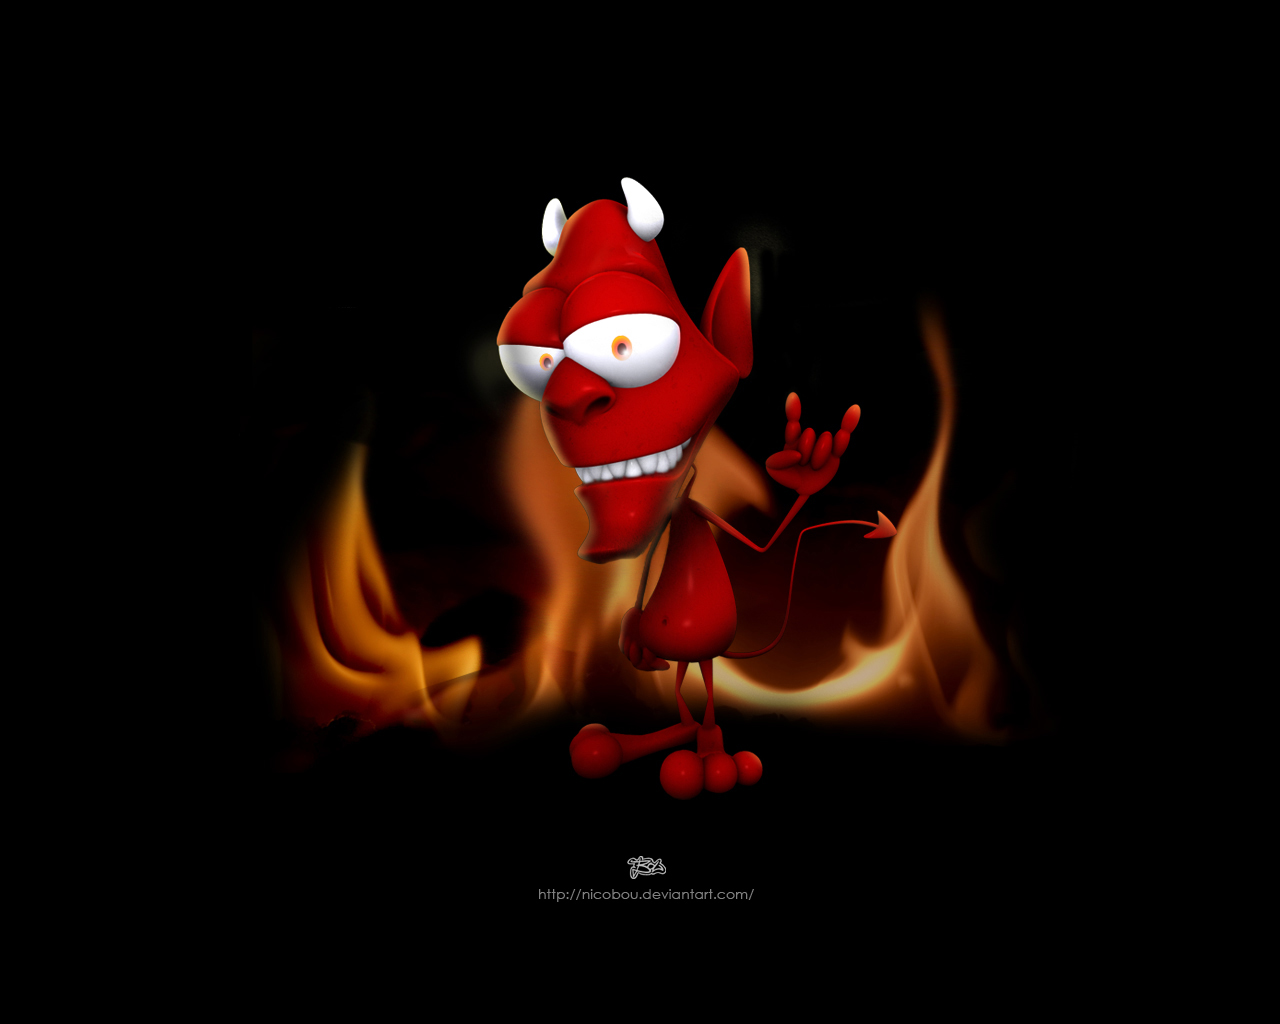 Devil by nicobou